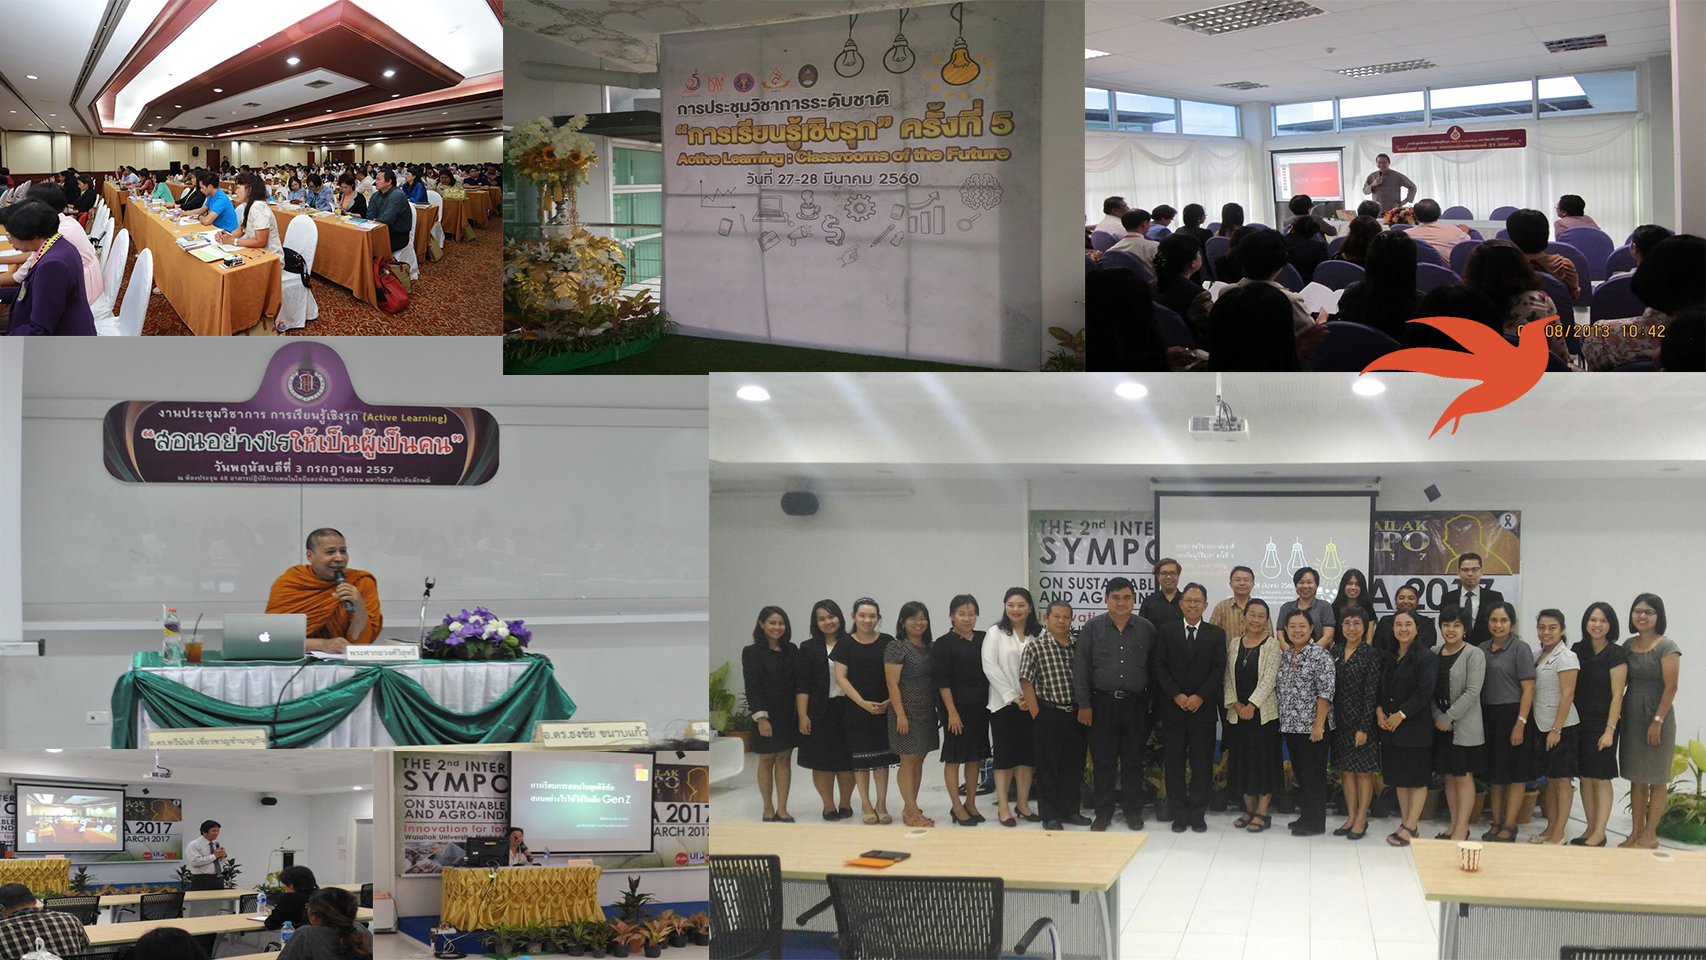 ขอเชิญชวนส่งผลงานเข้าร่วมการประชุมวิชาการ การเรียนรู้เชิงรุกครั้งที่ 6 ภายใต้หัวข้อ Active Learning ตอบโจทย์ Thailand 4.0 อย่างไร